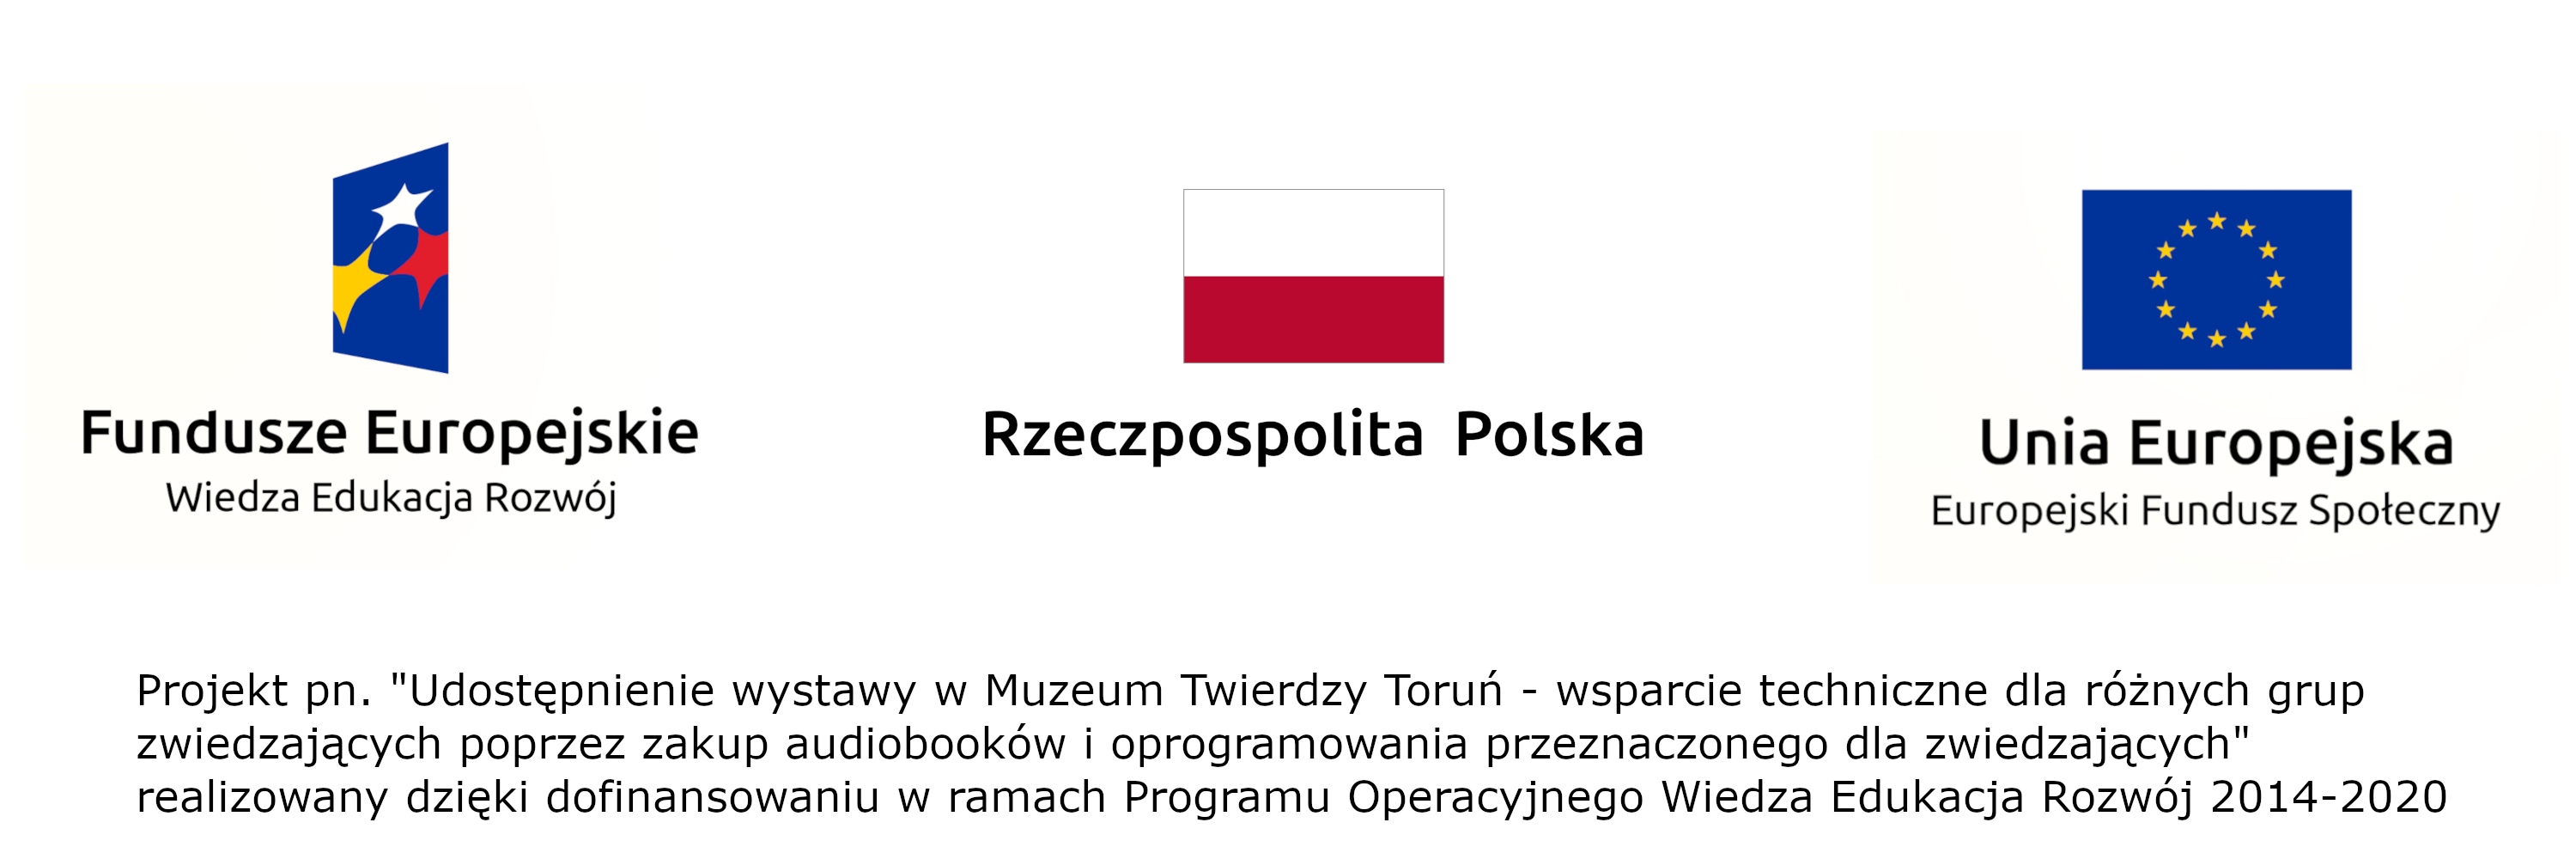 Loga Unii Europejskiej, funduszy europejskich i flaga Polski